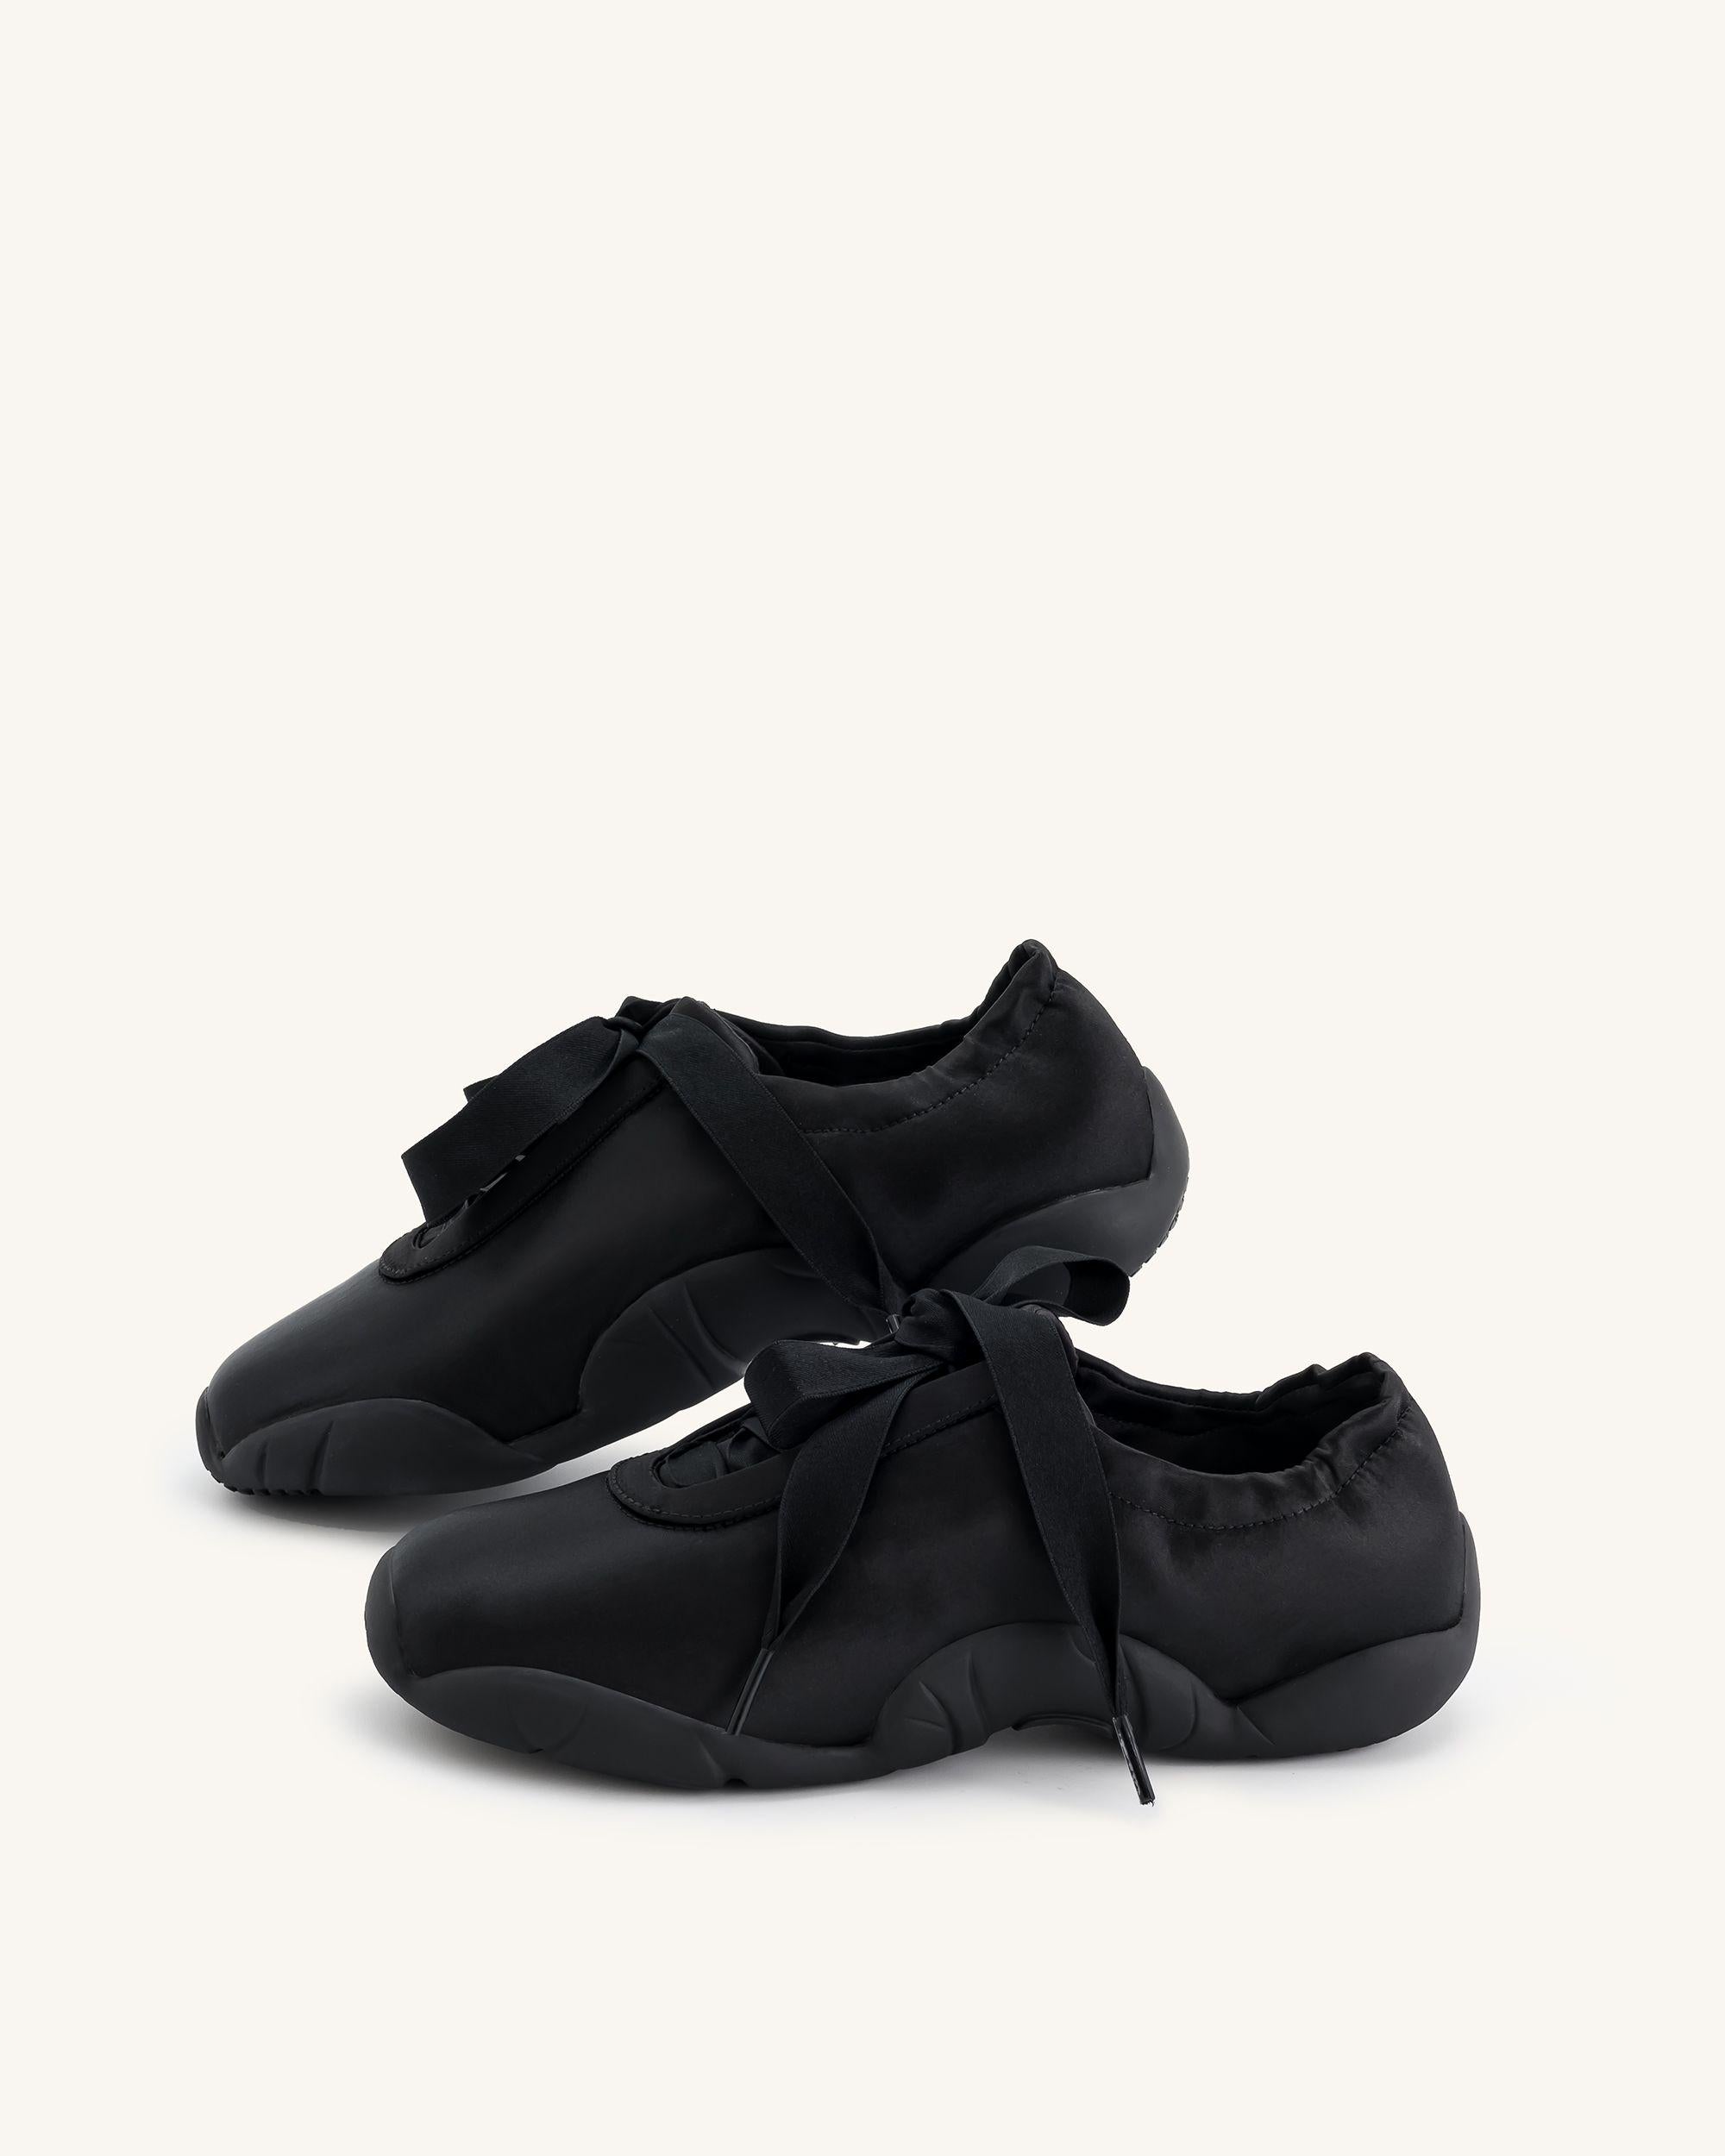 Flavia 芭蕾舞鞋 - 黑色